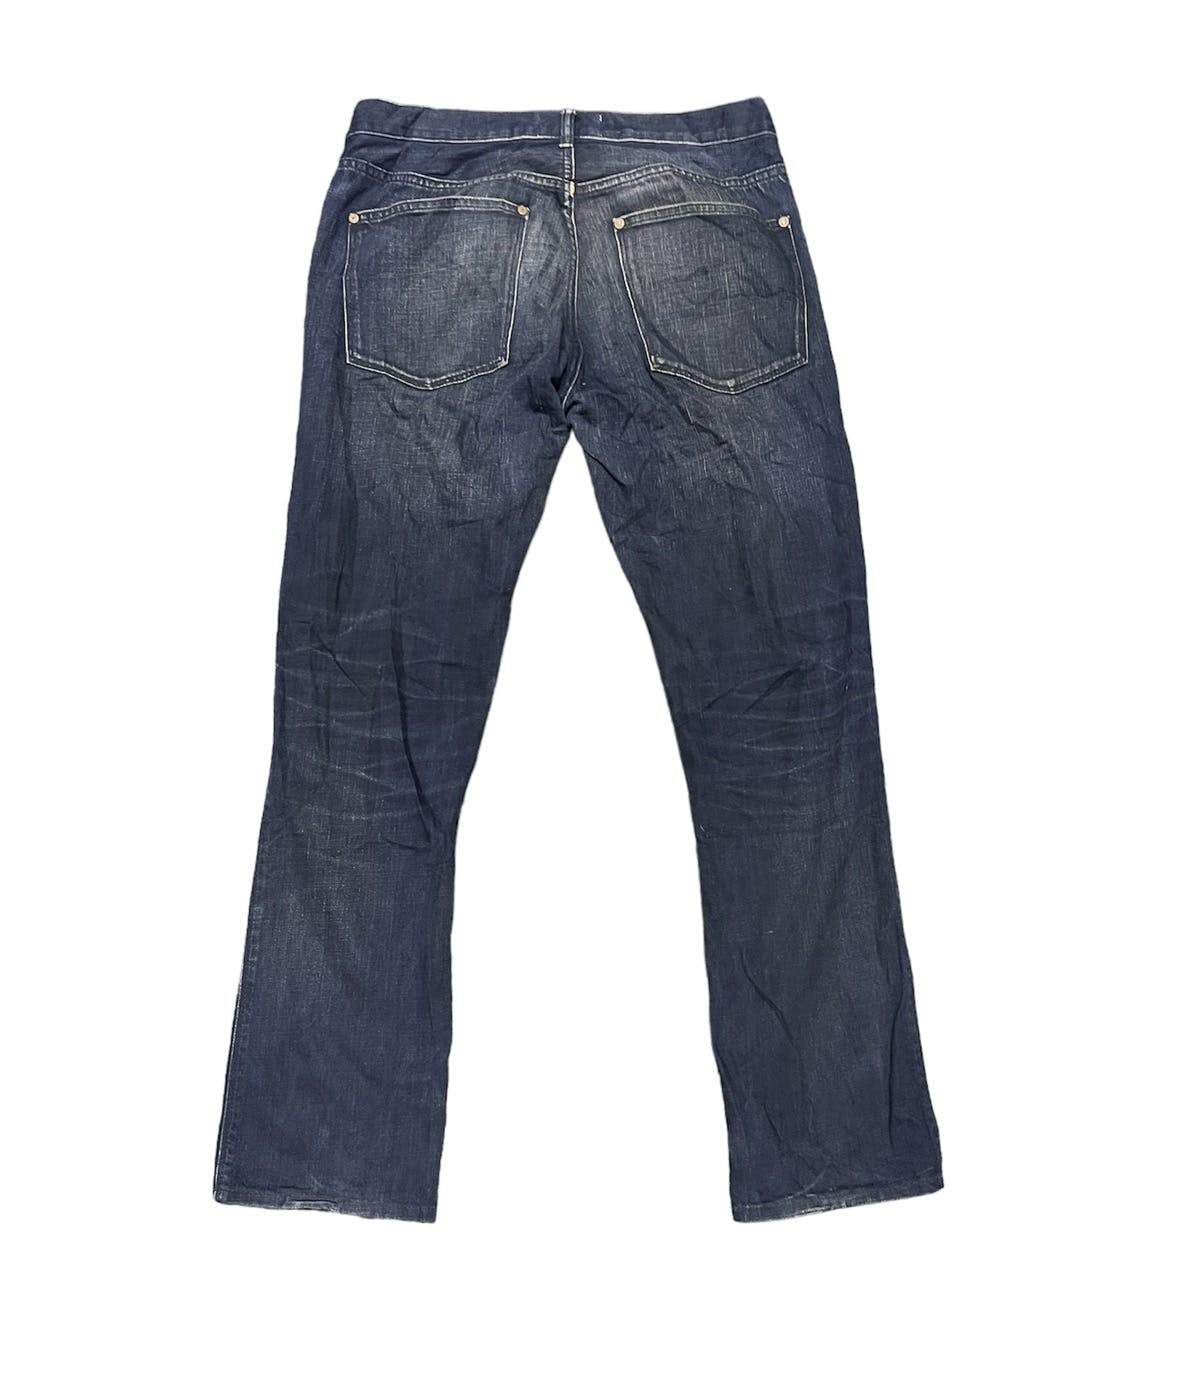 Acne studio jeans - 2